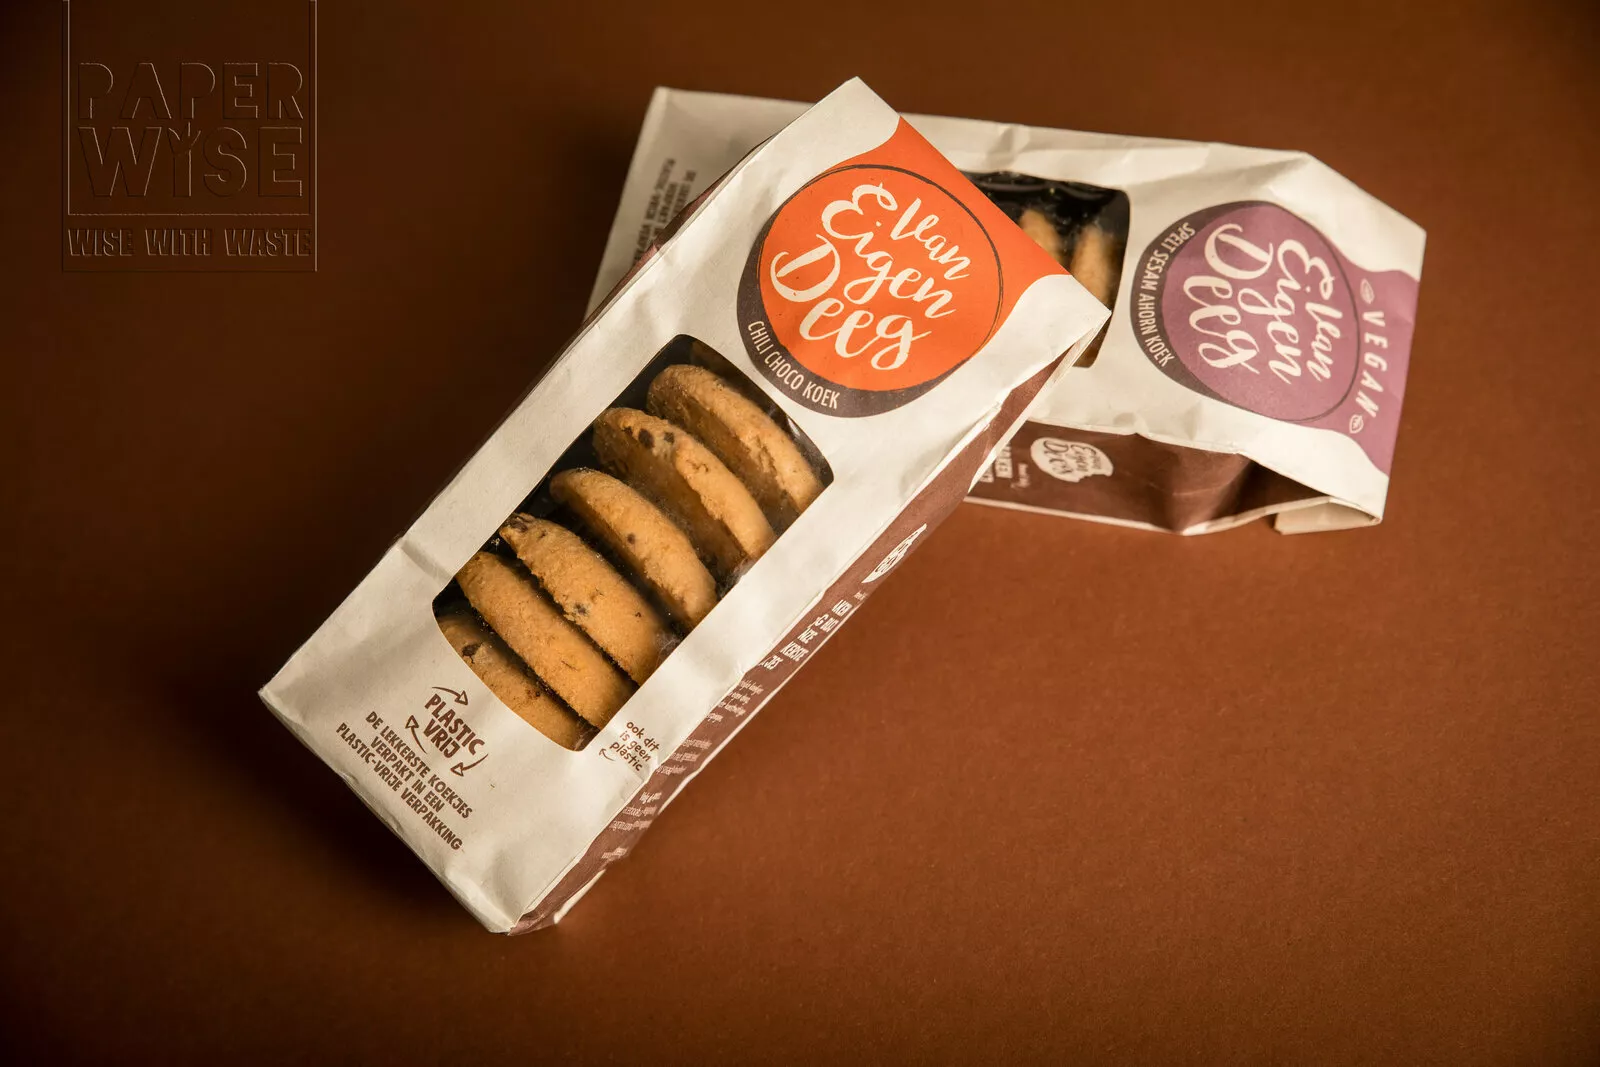 PaperWise natural paper greaseproof food packaging cookies compostable van eigen deeg